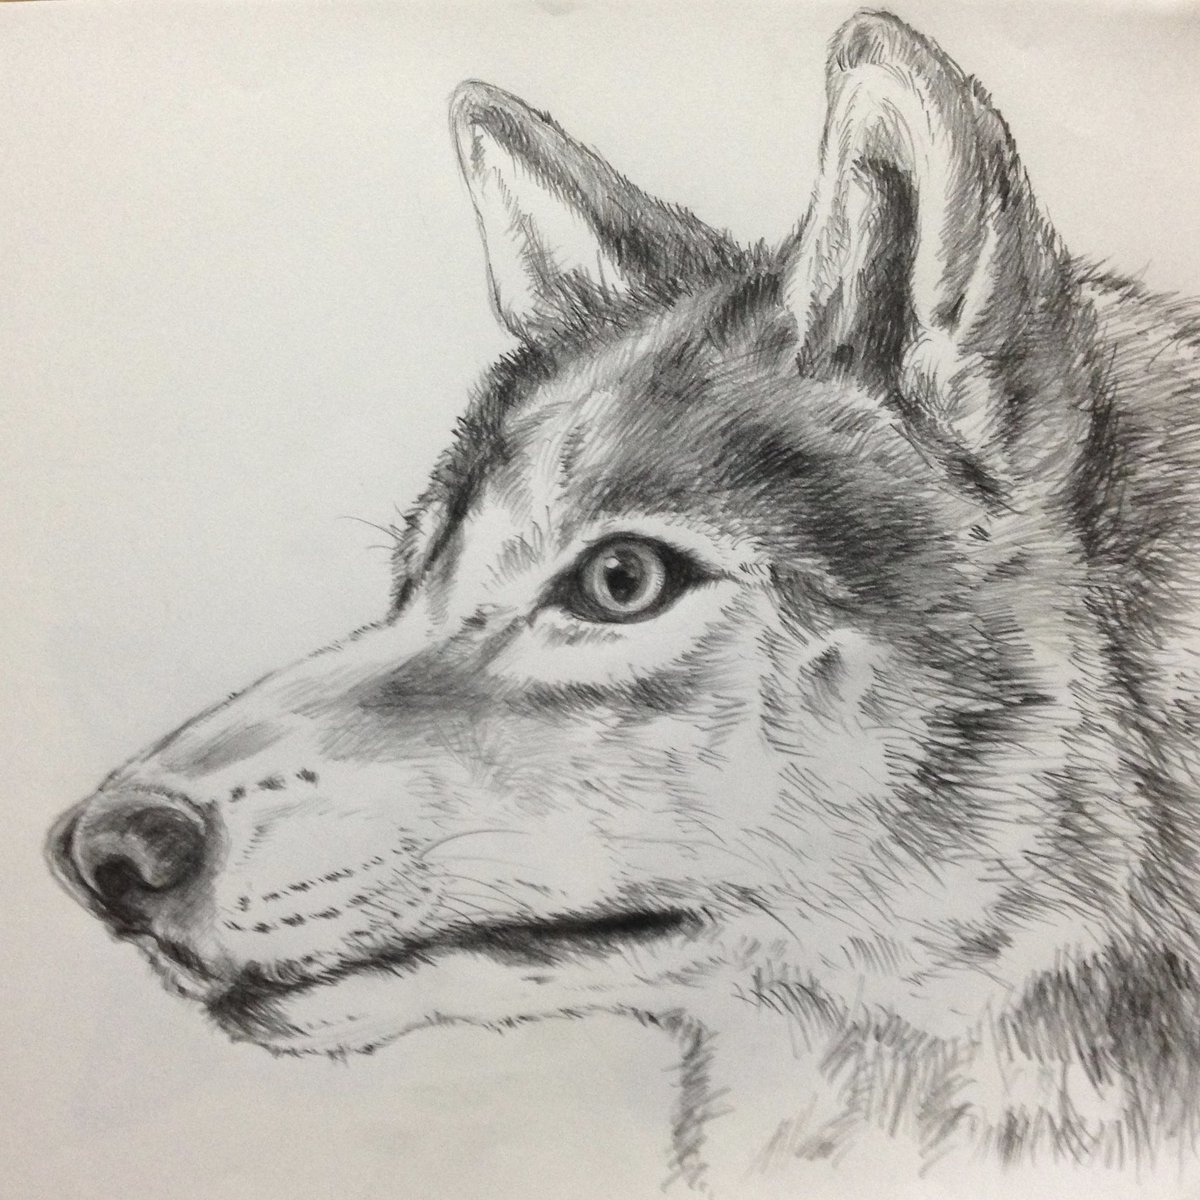 Yukari 横顔 狼 オオカミ イラスト イラストレーション 鉛筆画 絵描きさんと繋がりたい イラスト好きさんと繋がりたい 動物好きな人と繋がりたい Wolf Illustration